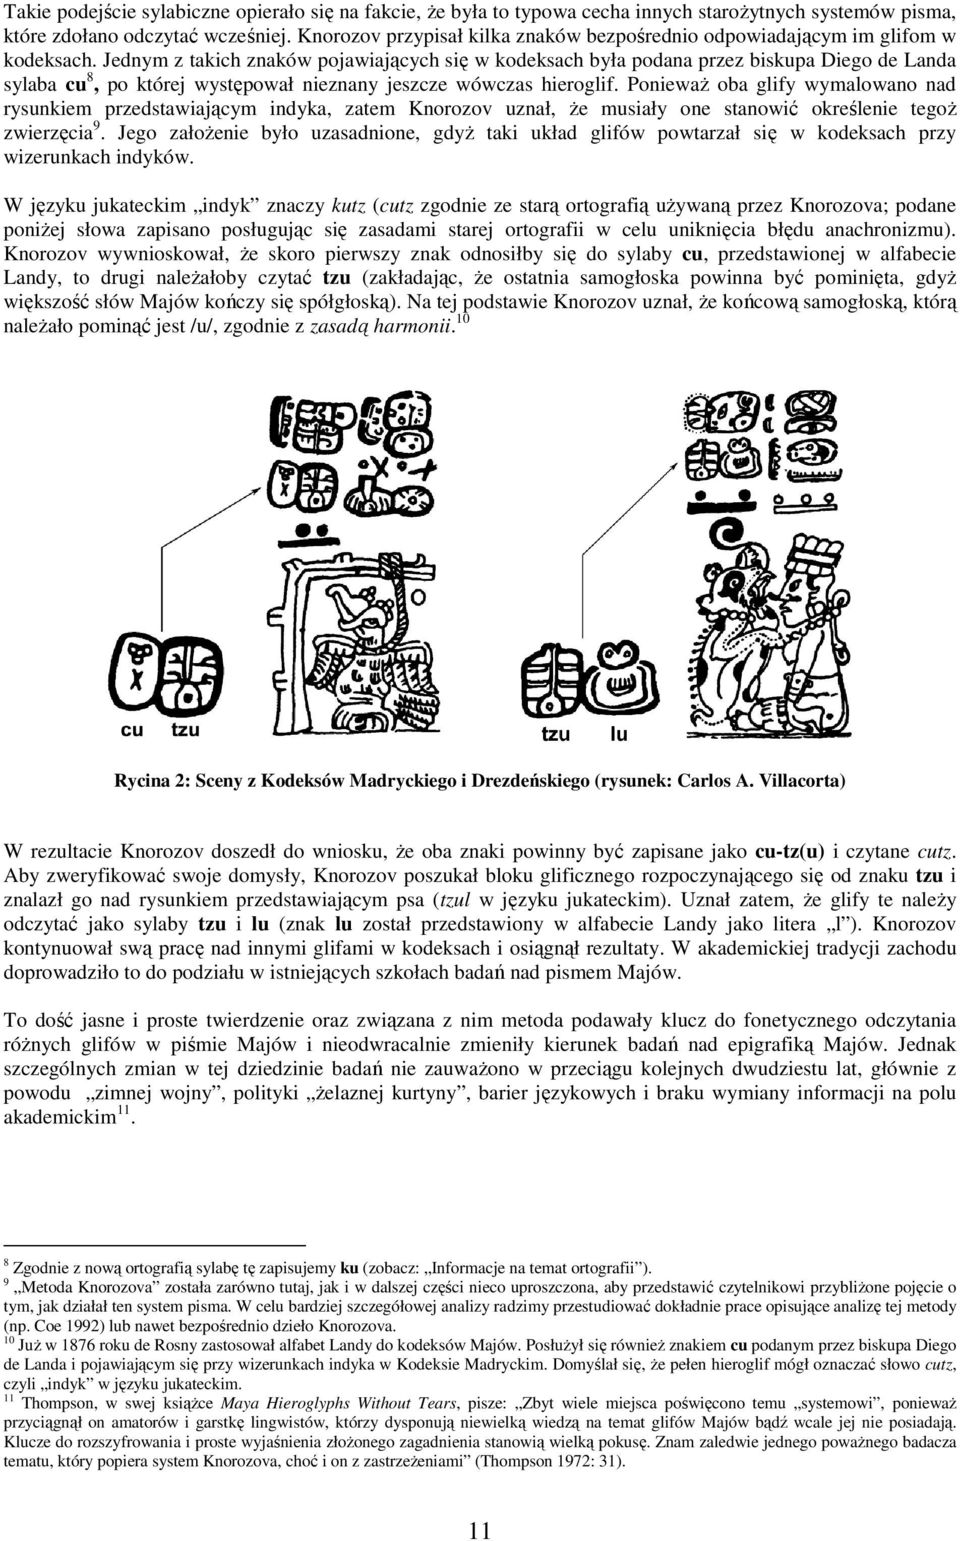 Jedym z takich zaków pojawiających się w kodeksach była podaa przez biskupa Diego de Lada sylaba cu 8, po której występował iezay jeszcze wówczas hieroglif.